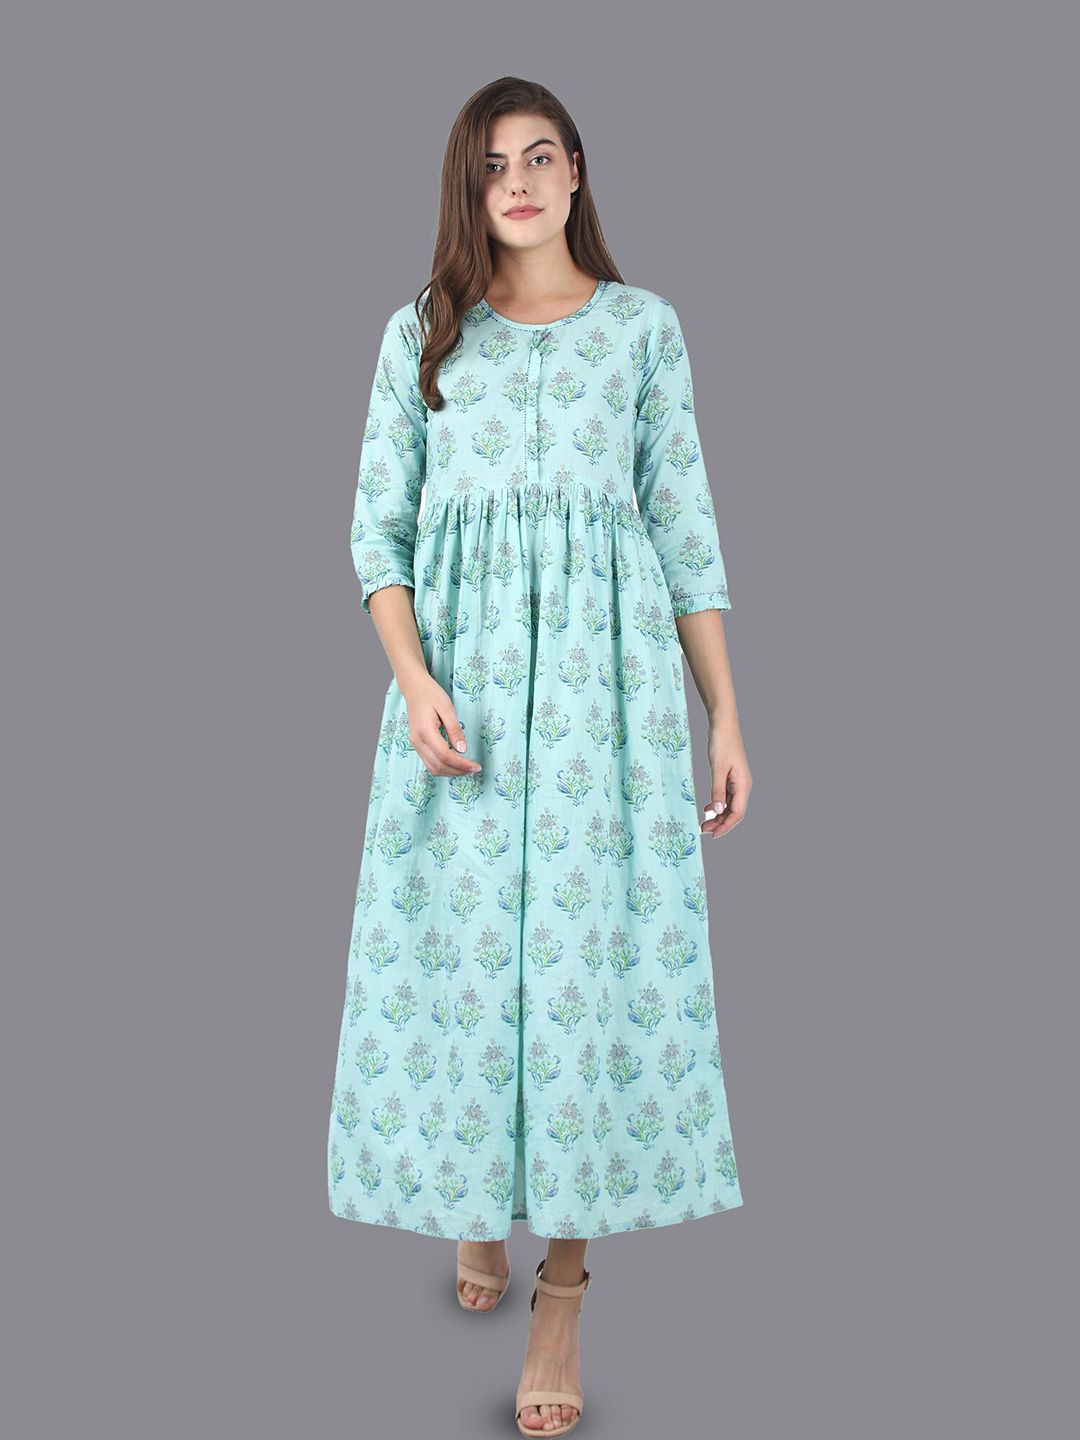 KAAJH Women Sea Green Ethnic Motif Printed A-Line Maxi Dress Price in India